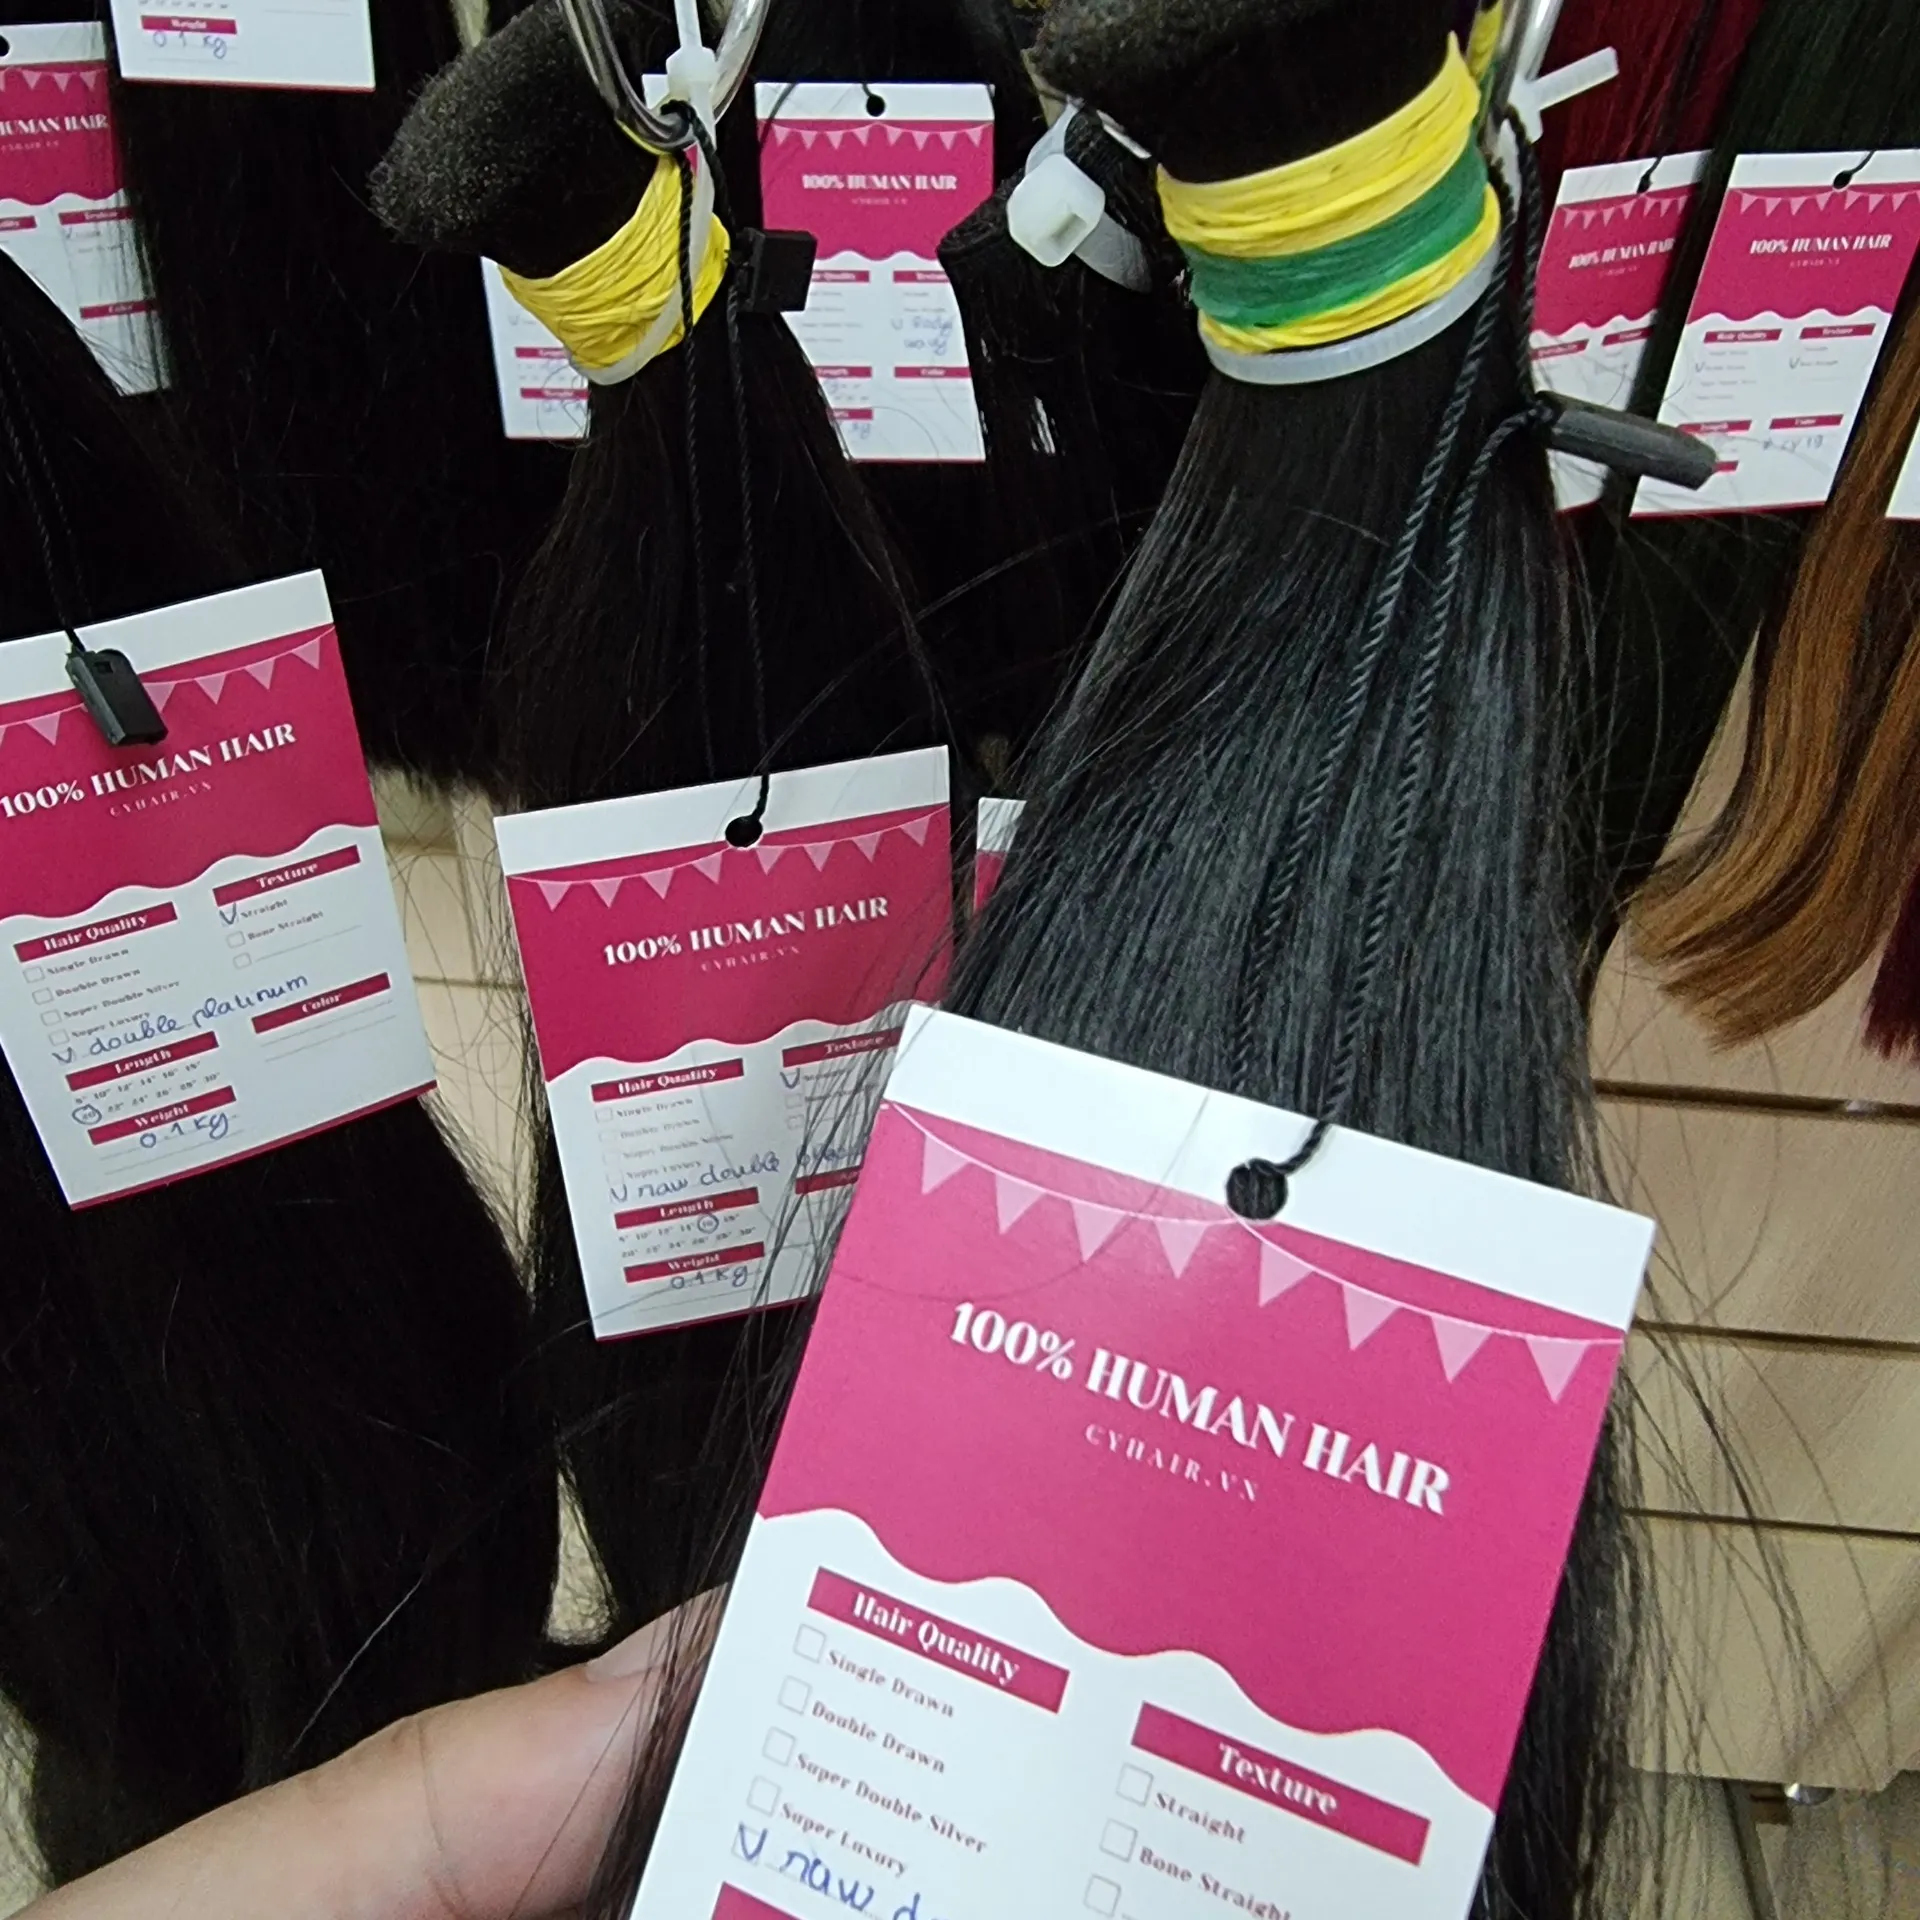 26 Otc הגלובלי סחר רמי וייטנאמי שיער בבריטניה אין שפיכה לא להסתבך שיער הרחבות